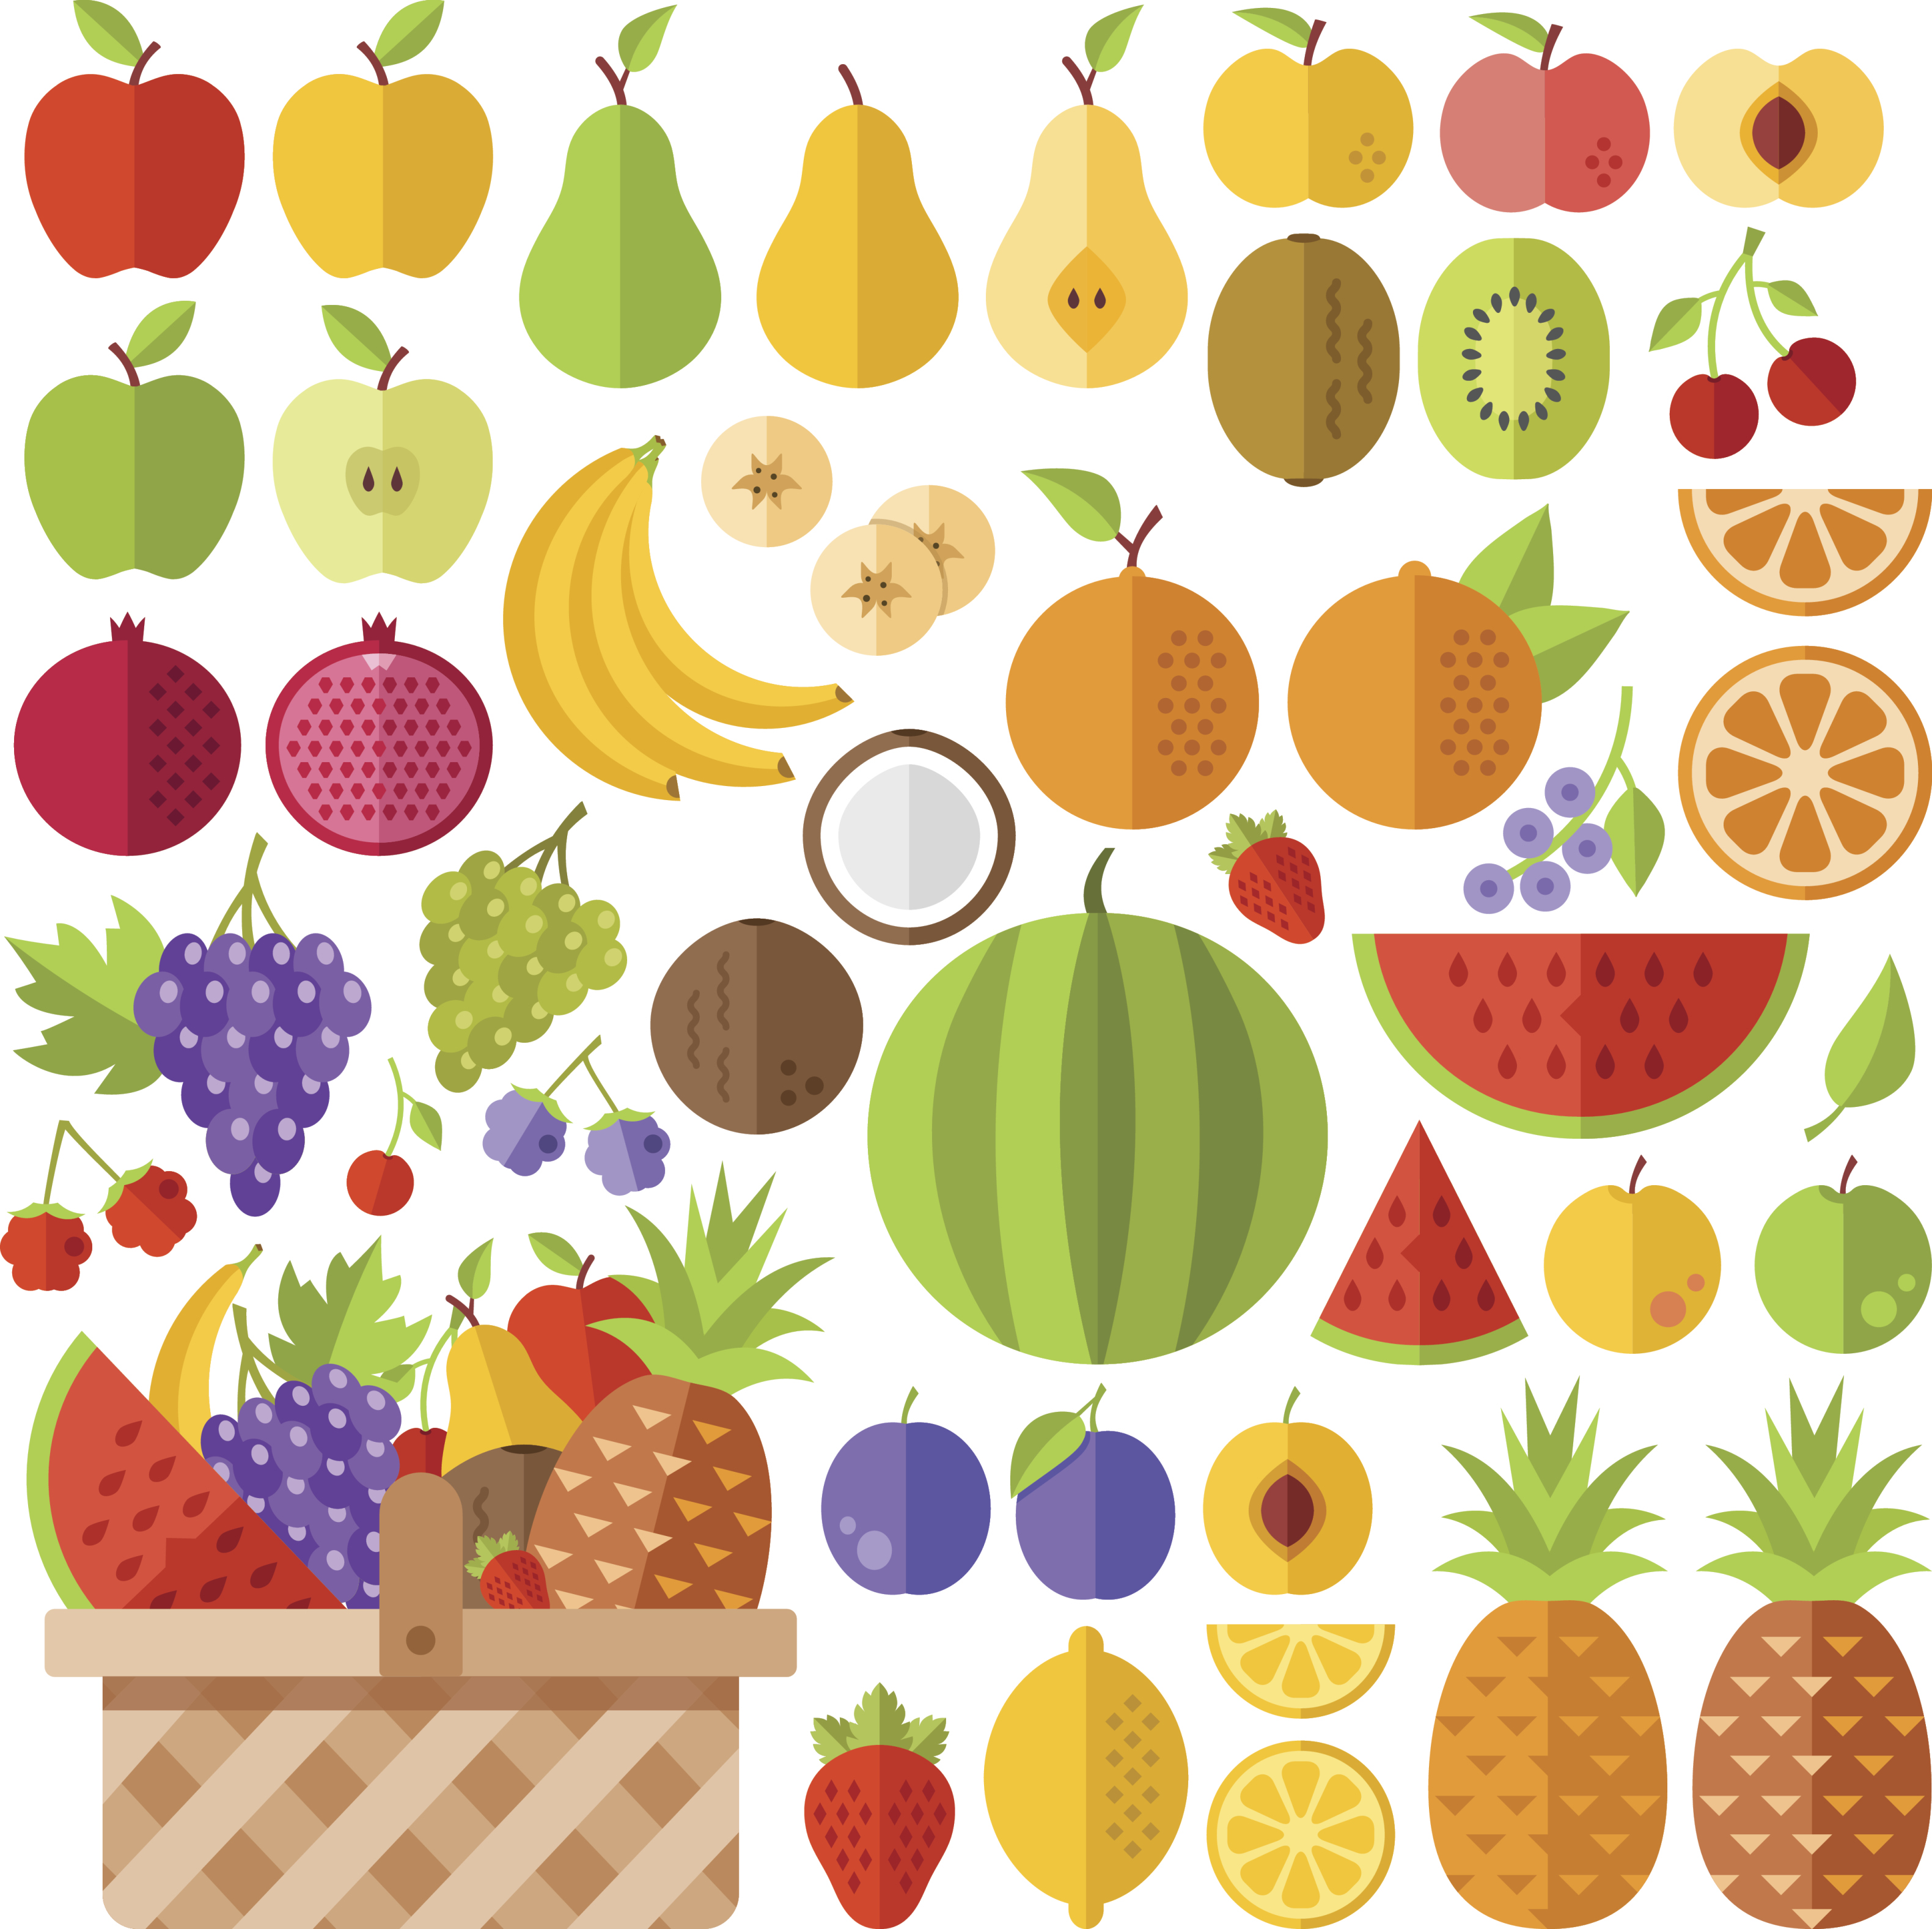 Quais são as frutas usadas para o sabor tutti-frutti dos chicletes?